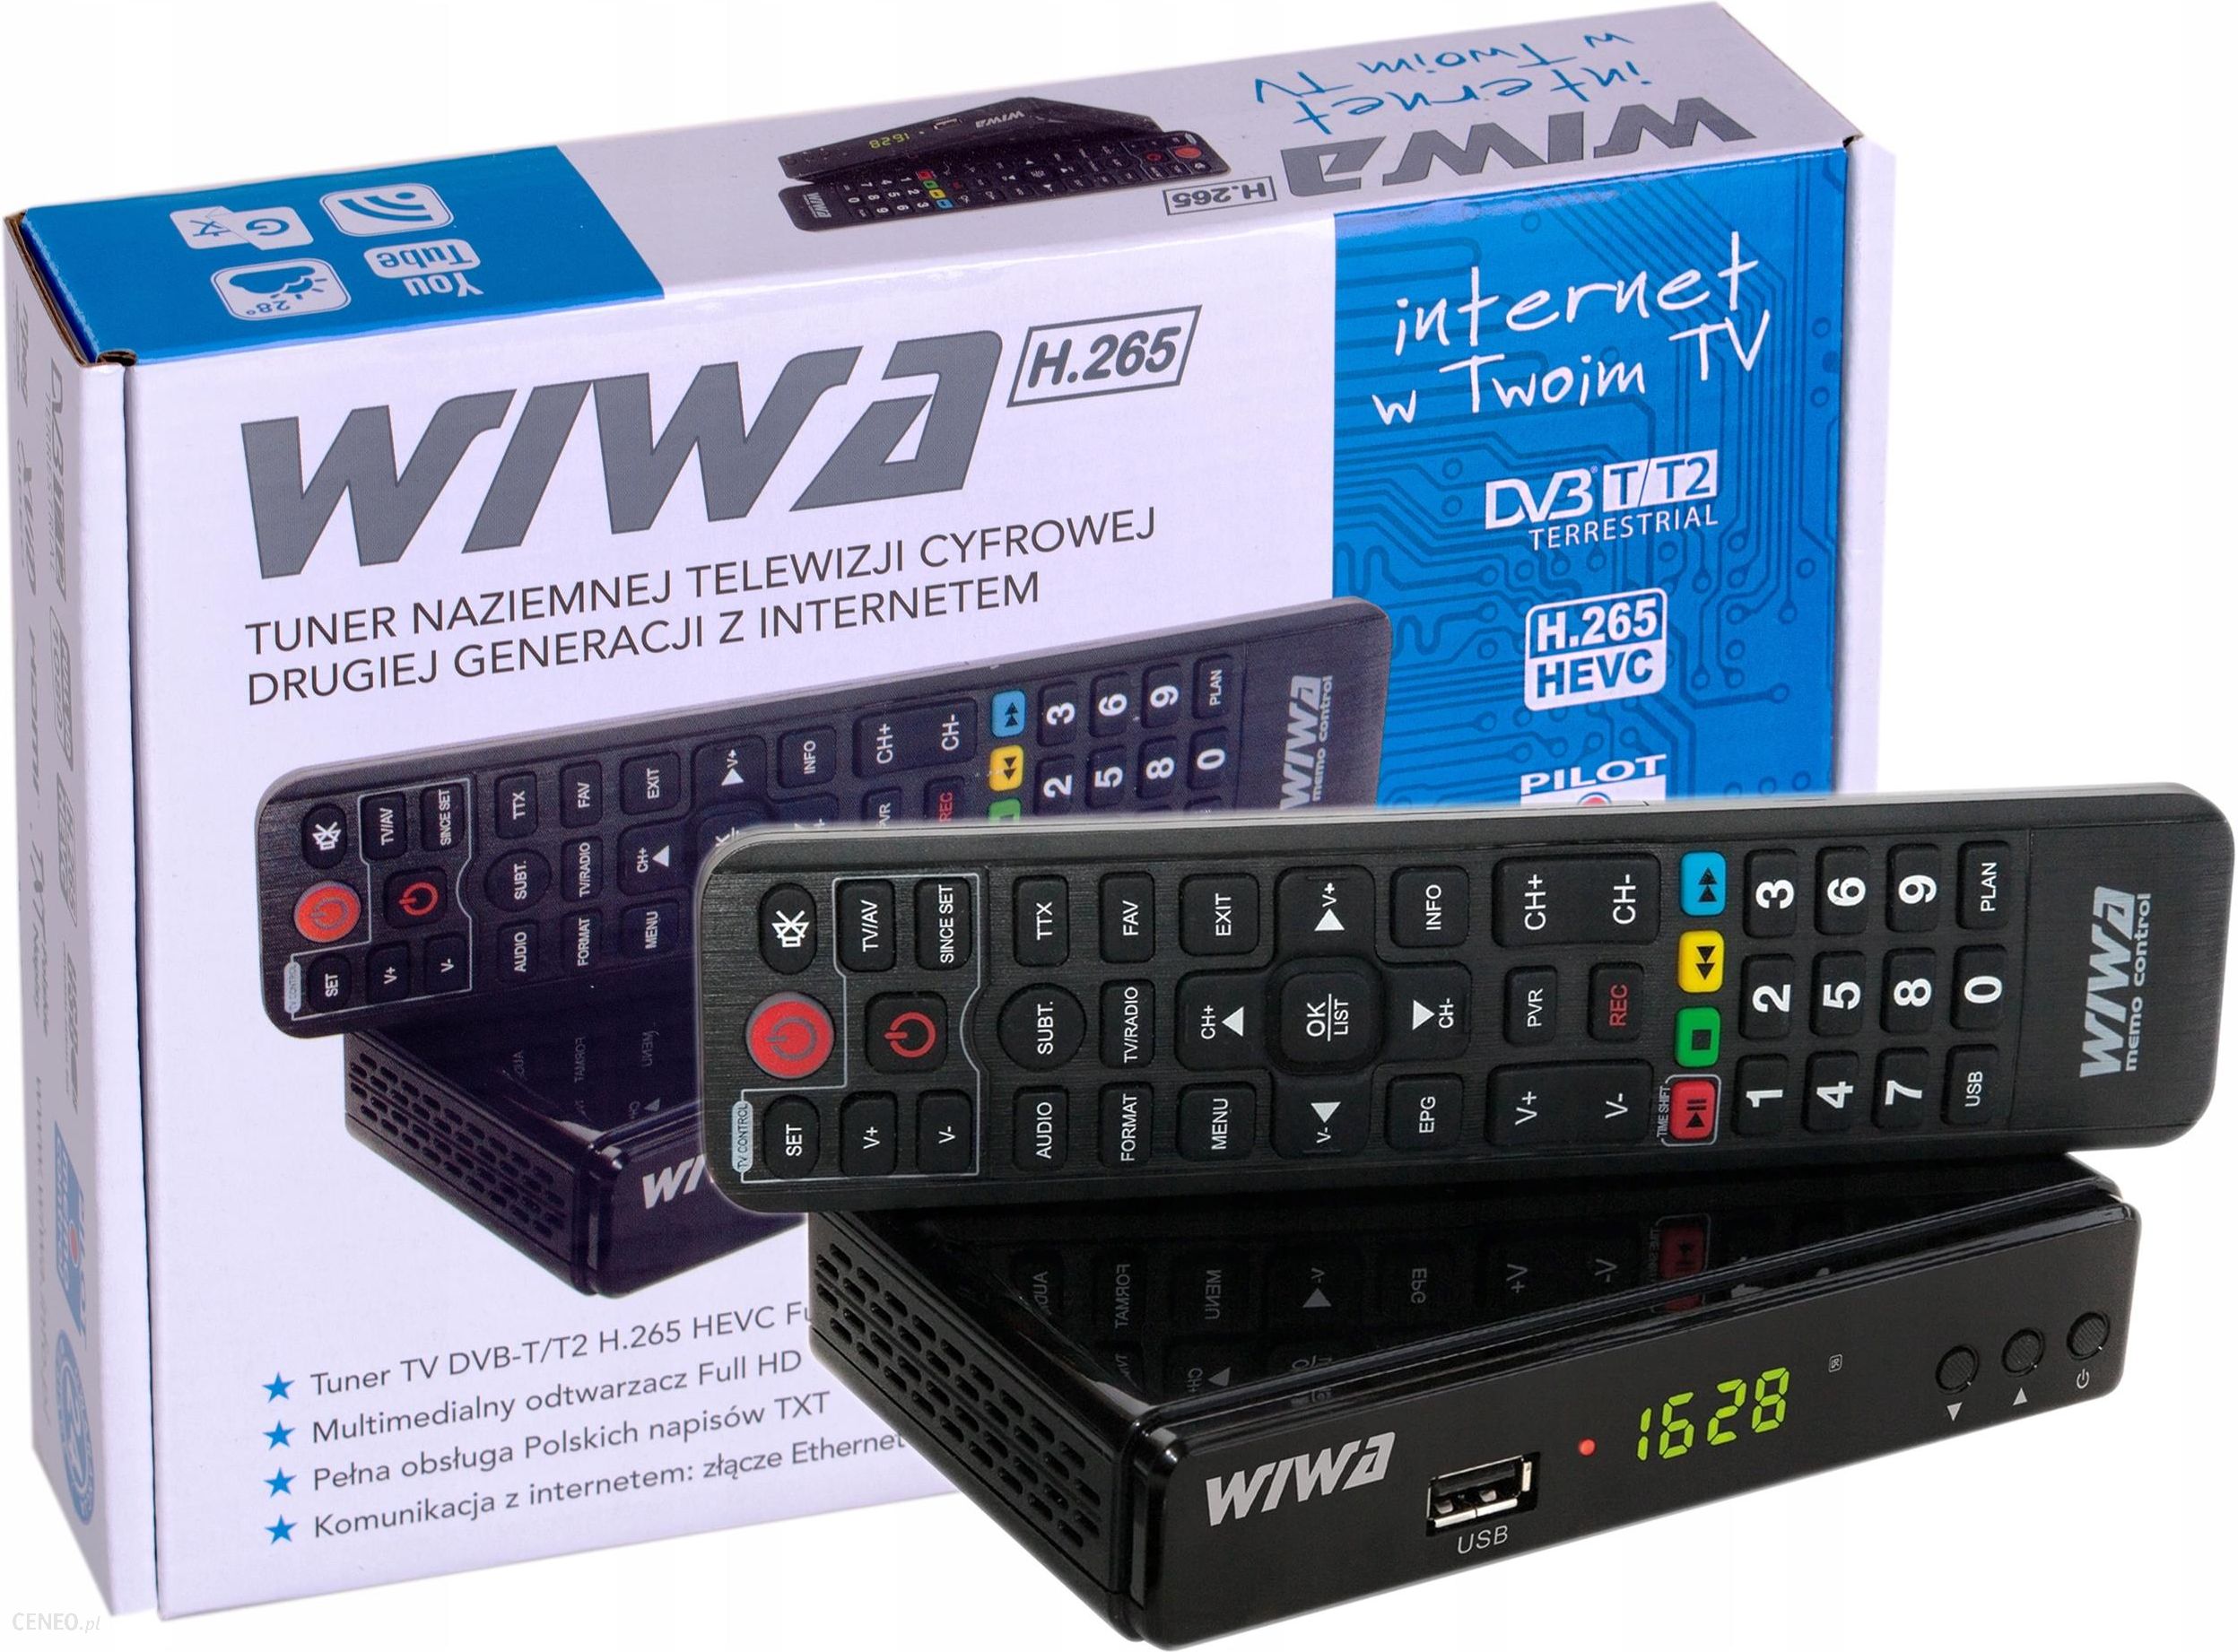 Wiwa Tuner DVB-T2 H.265